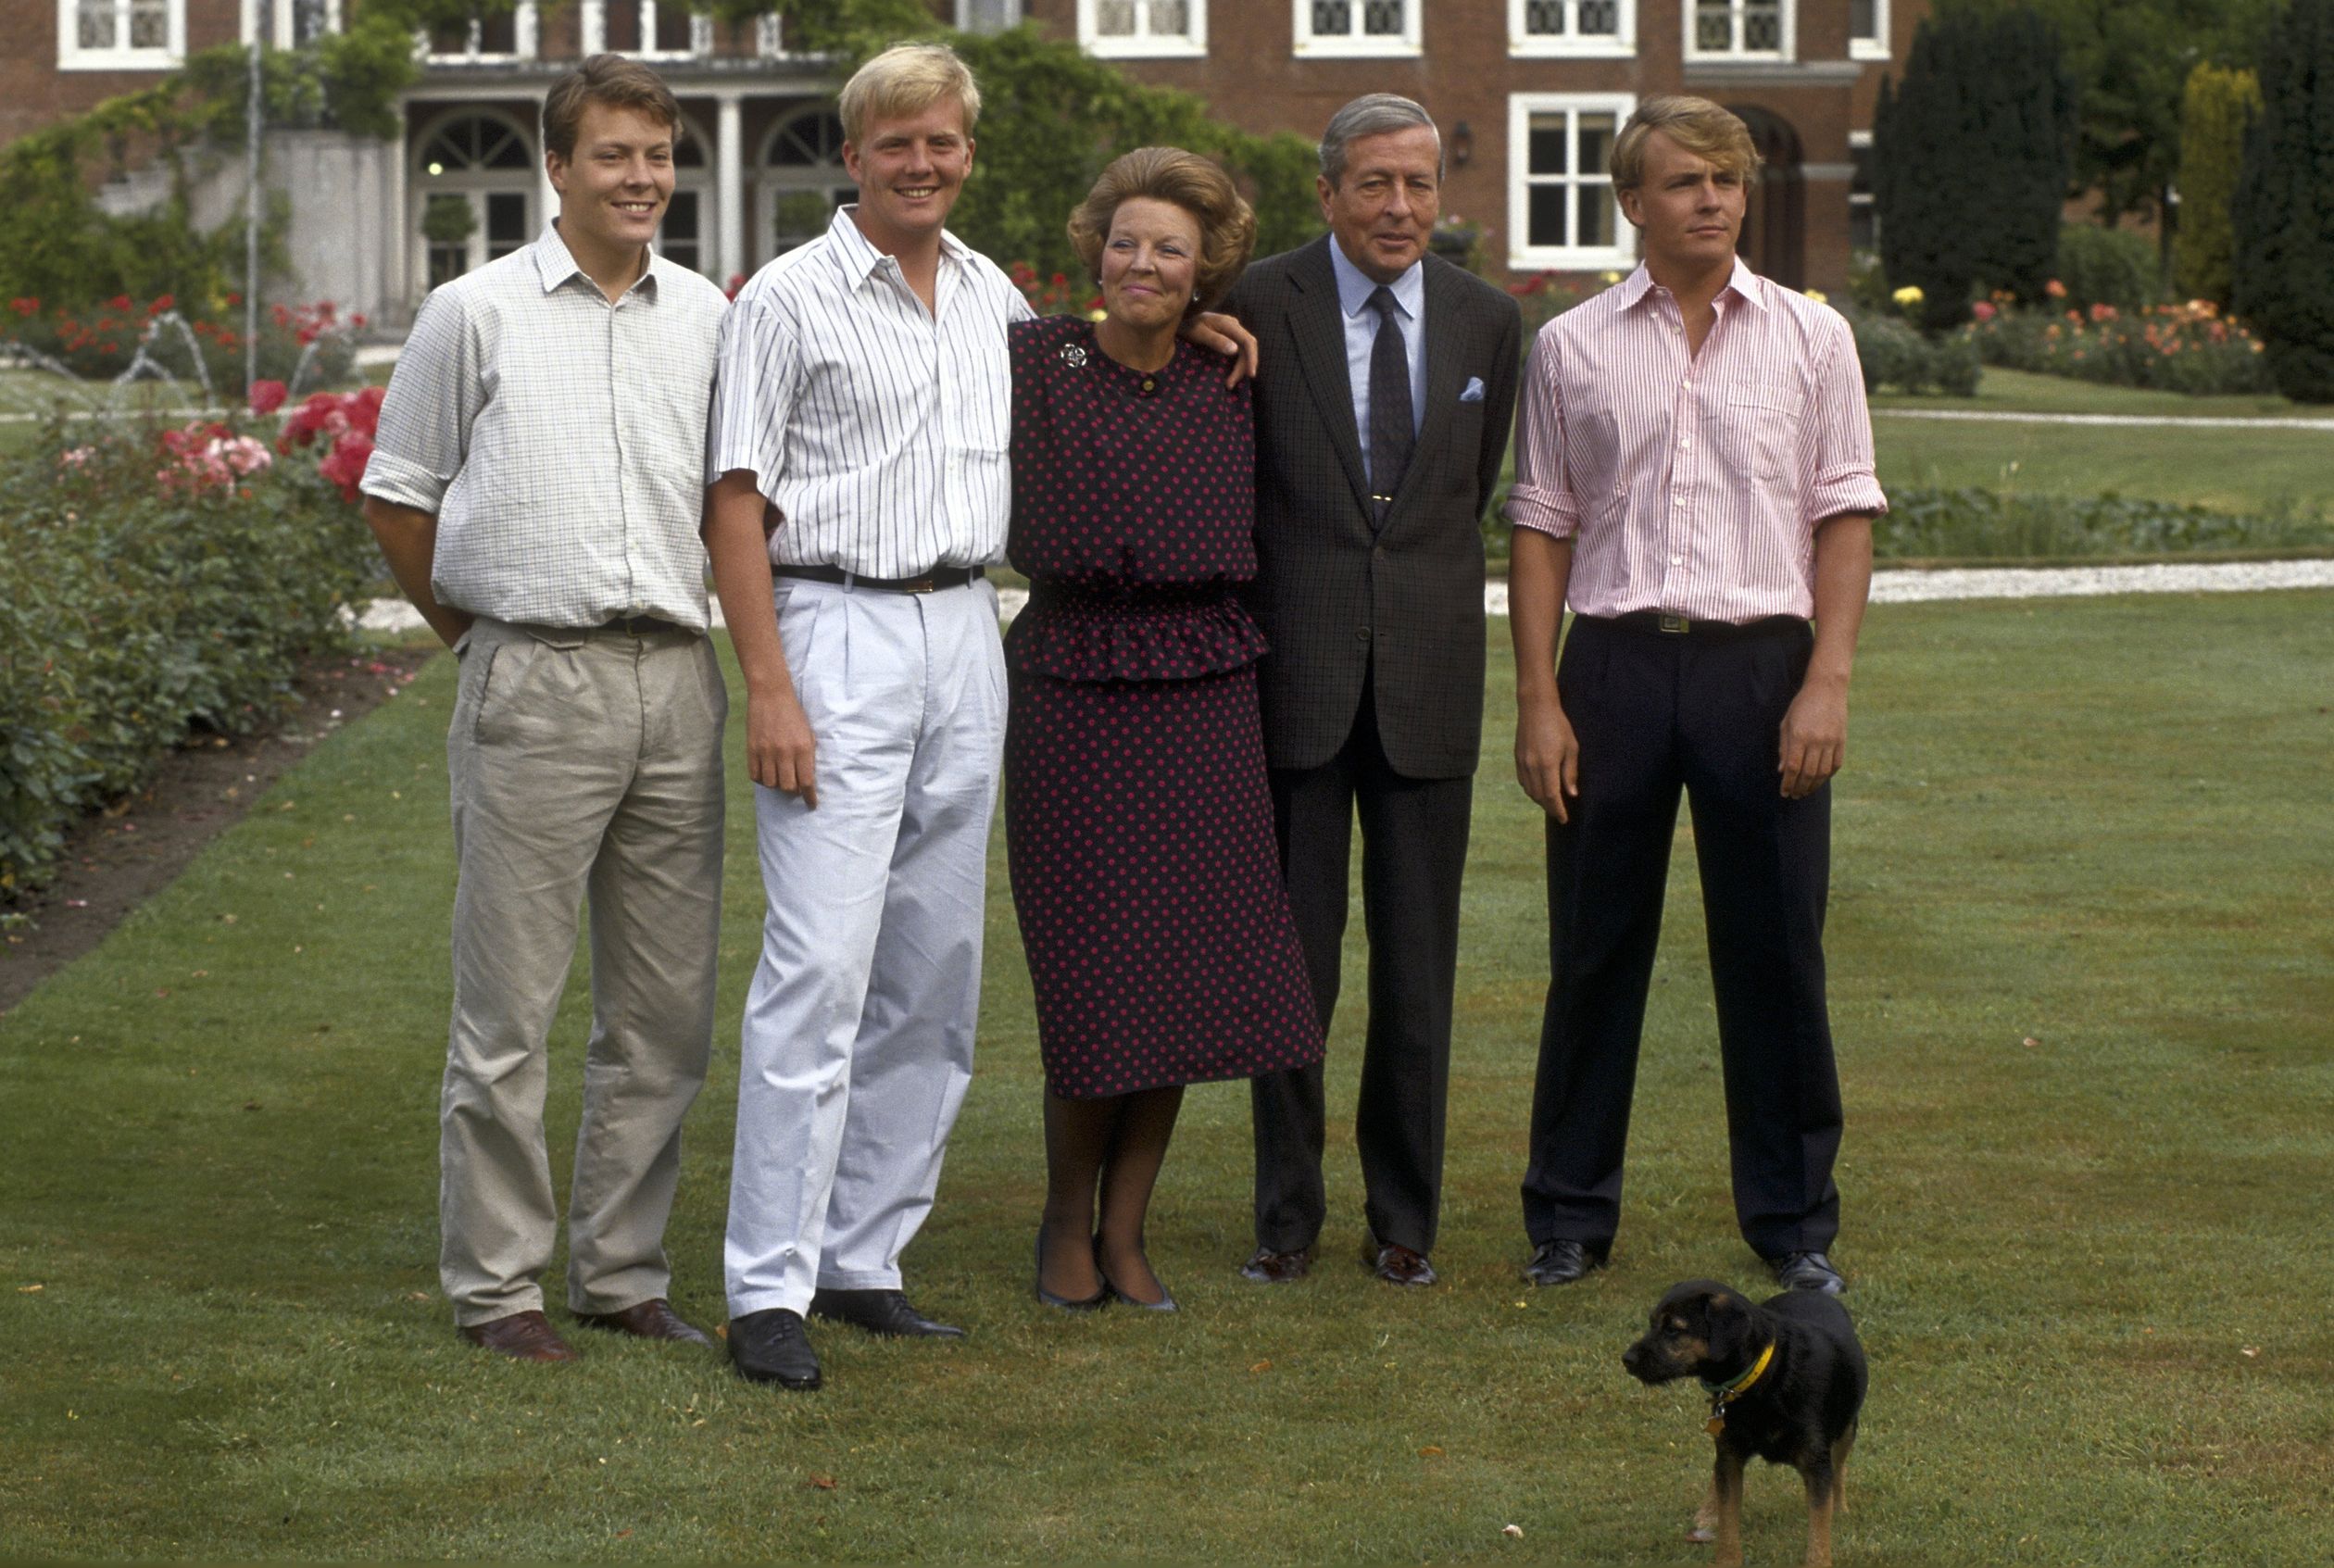 1990 - Het koninklijk paar poseert met hun drie zonen in de tuin van Paleis Huis ten Bosch. De